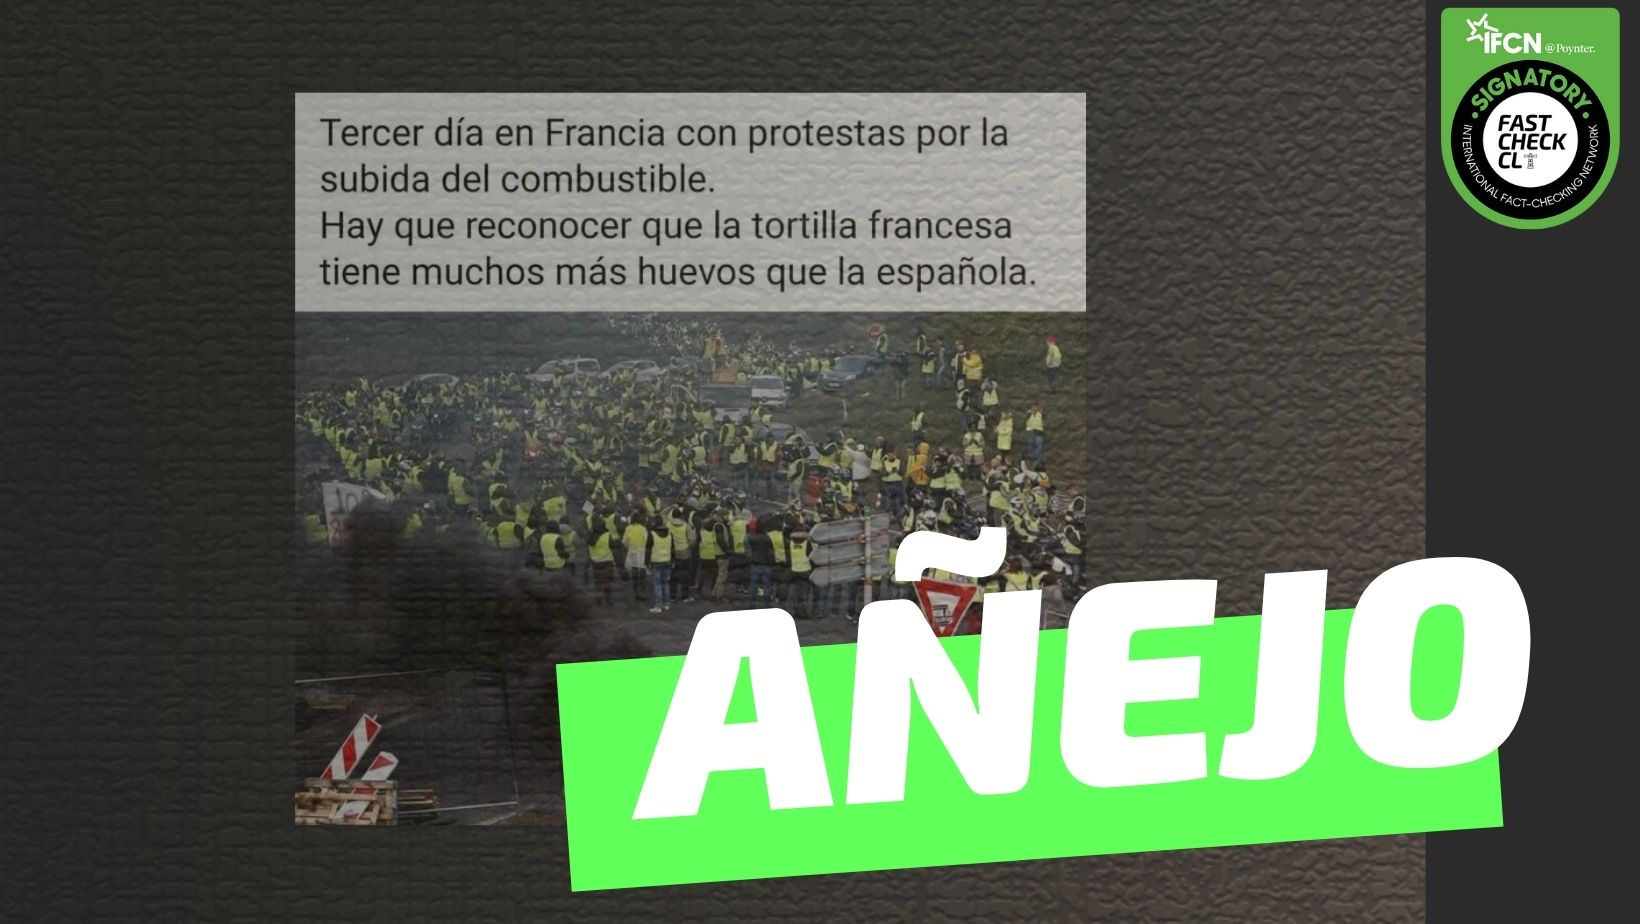 You are currently viewing (Imagen) “Tercer día en Francia con protestas por la subida del combustible”: #Añejo